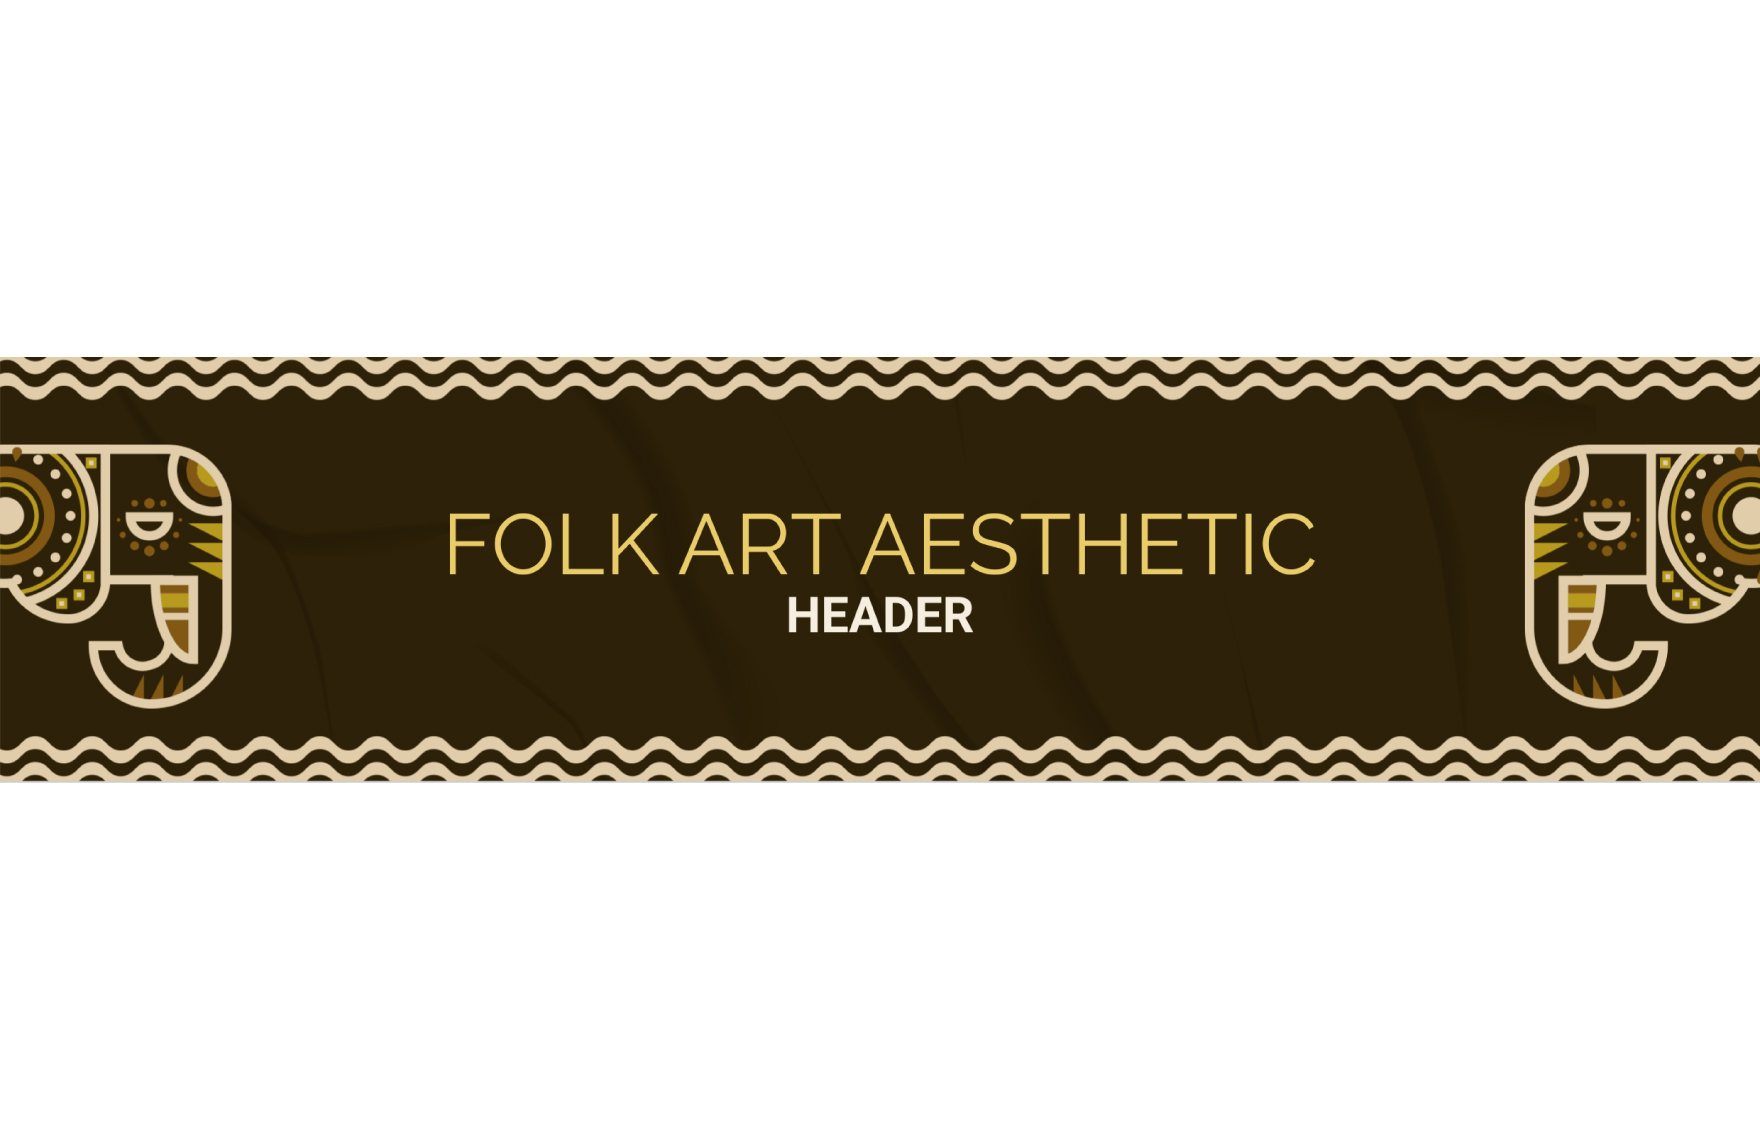 Folk Art Aesthetic Header Template